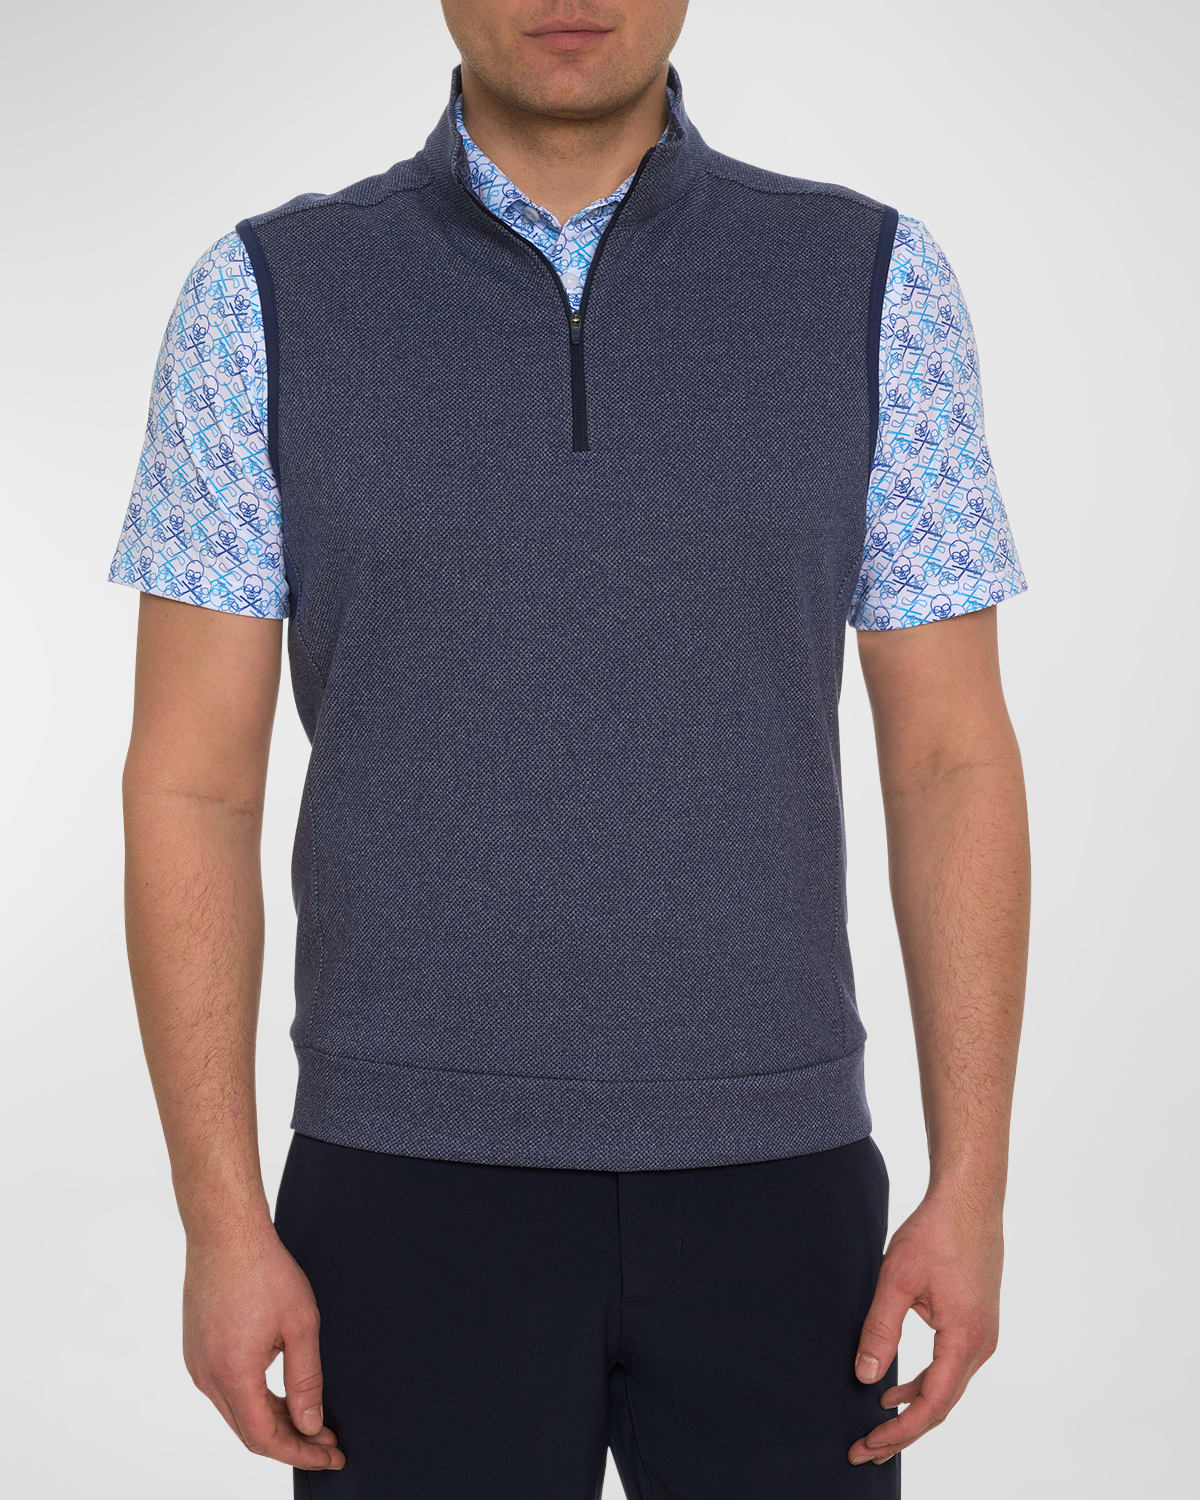 Men's Treviso Quarter-Zip Vest